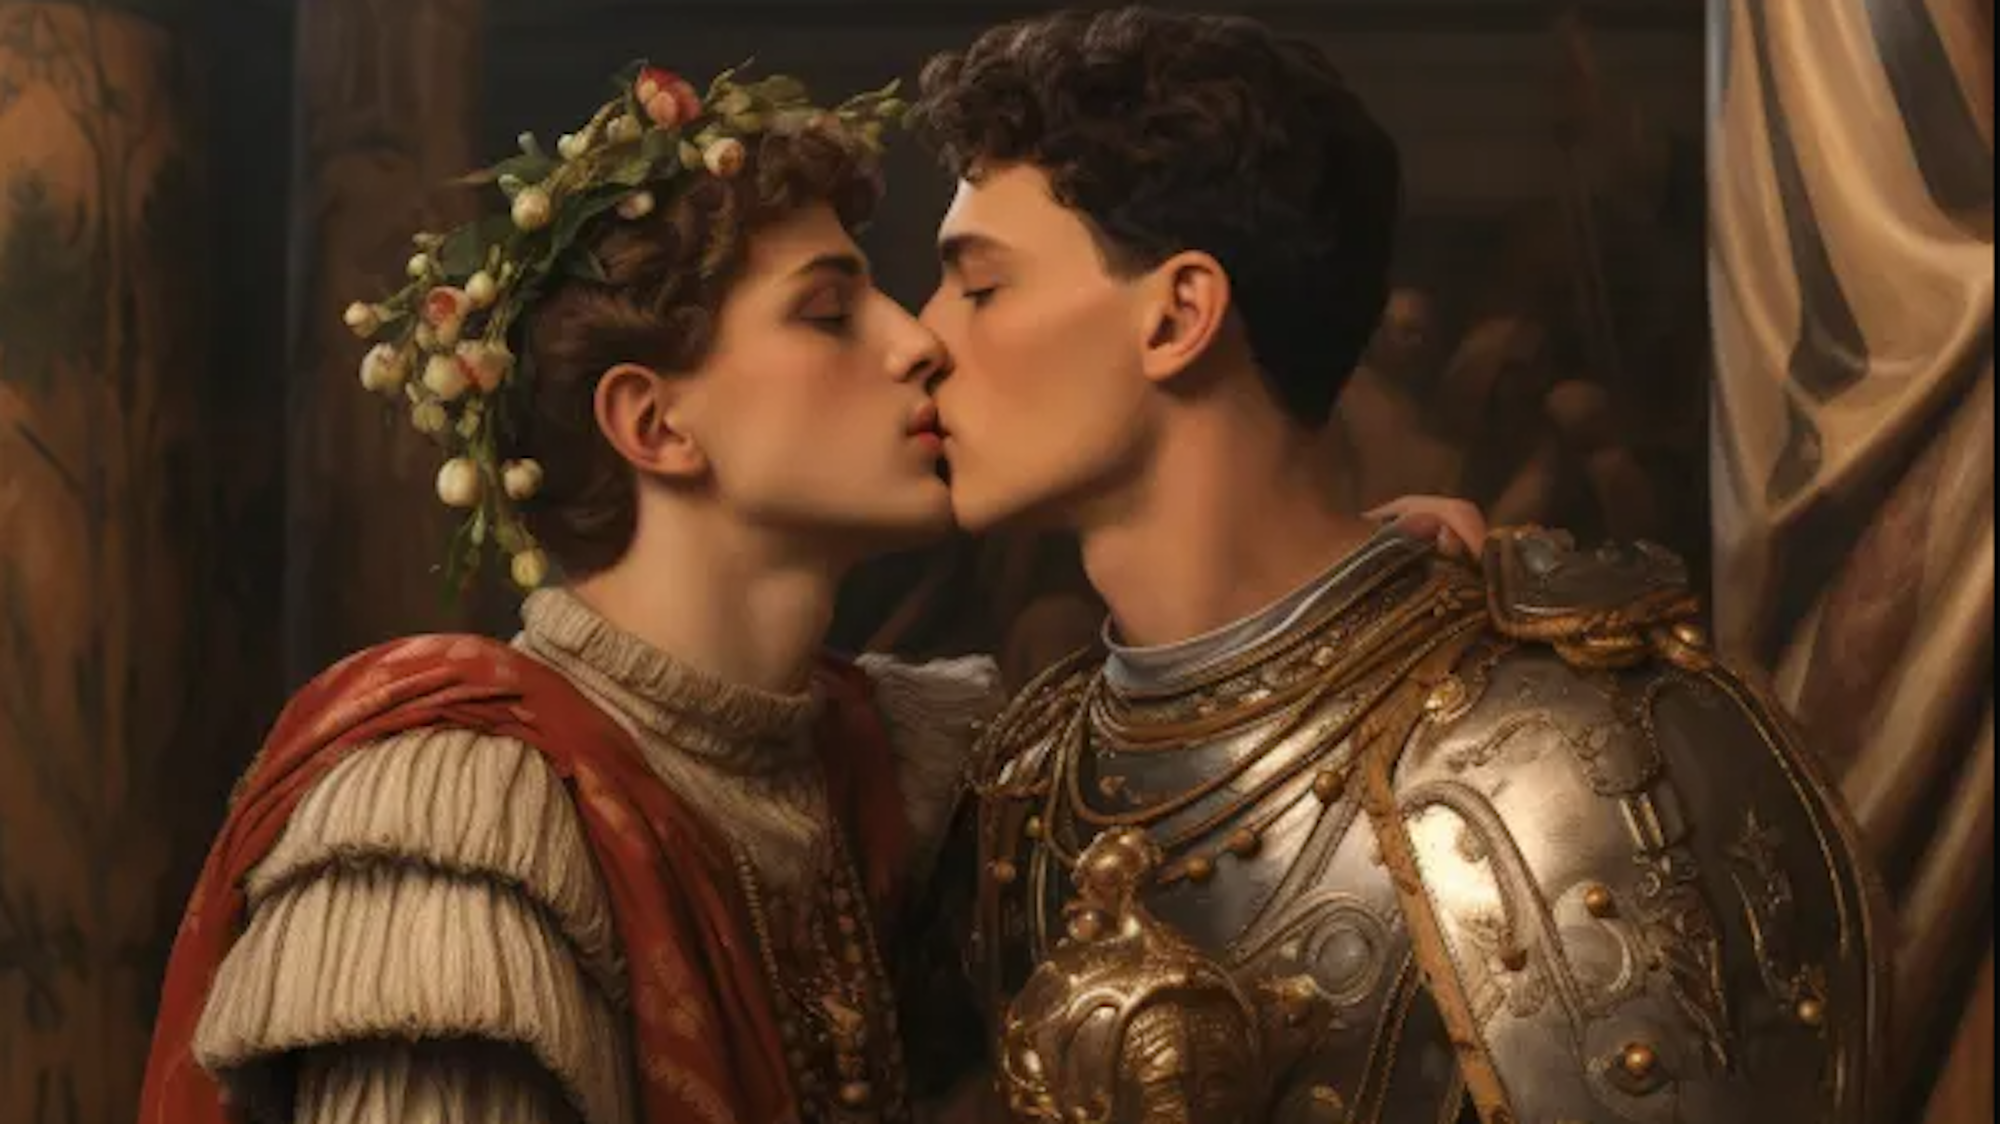 Auf unserem mit Hilfe Künstlicher Intelligenz erstellten Symbolbild küssen sich zwei Personen in römischer Kleidung.